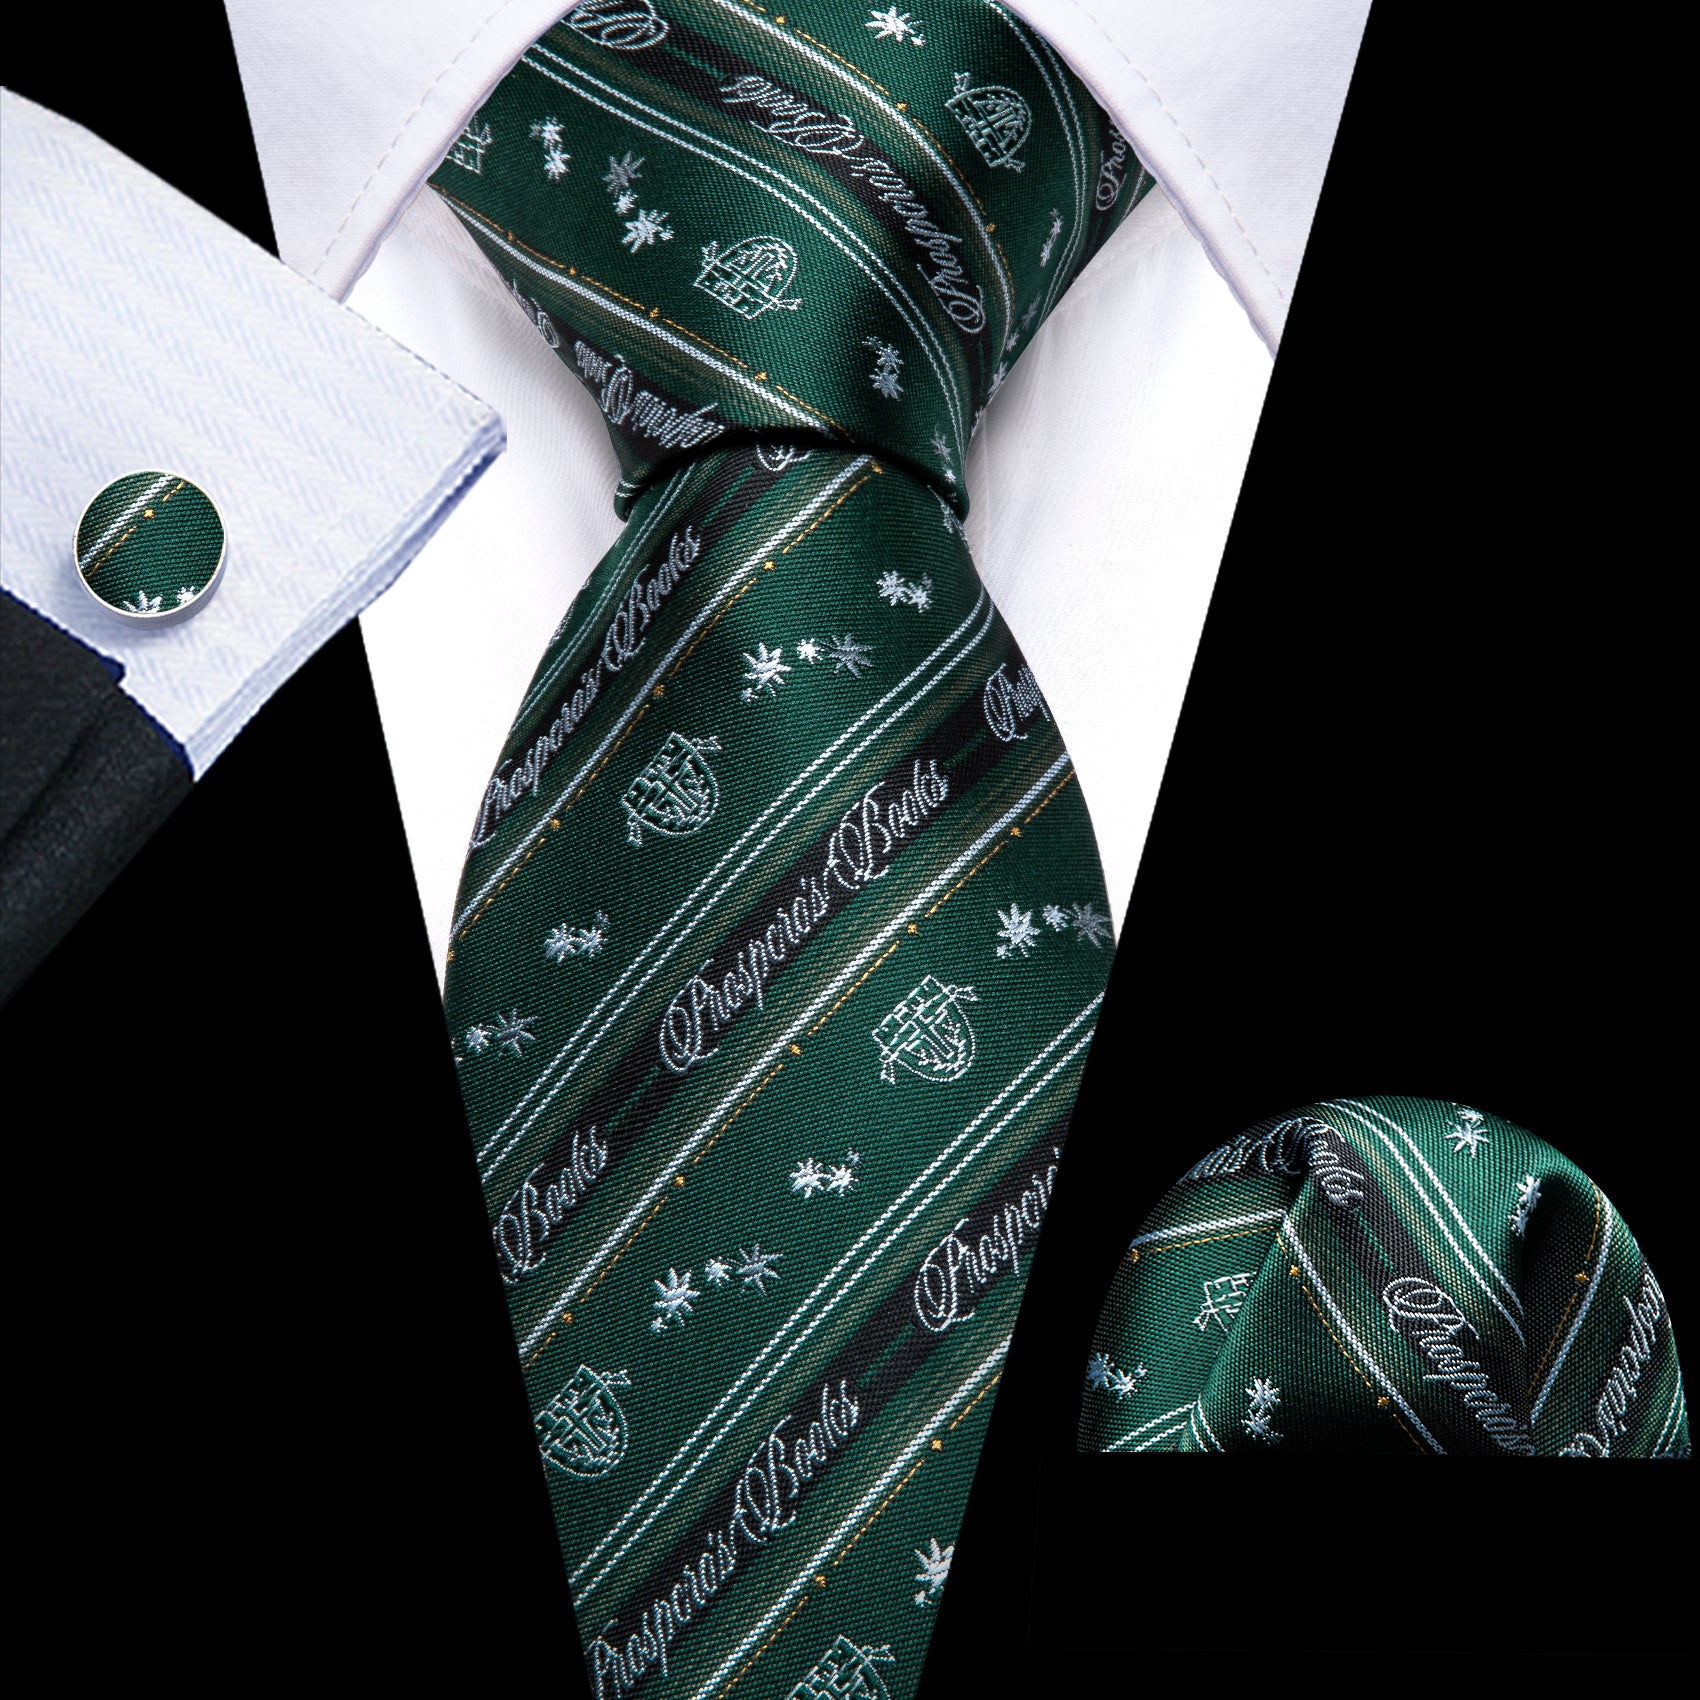  Dark Green Floral Striped Silk Tie Handkerchief Cufflinks Set